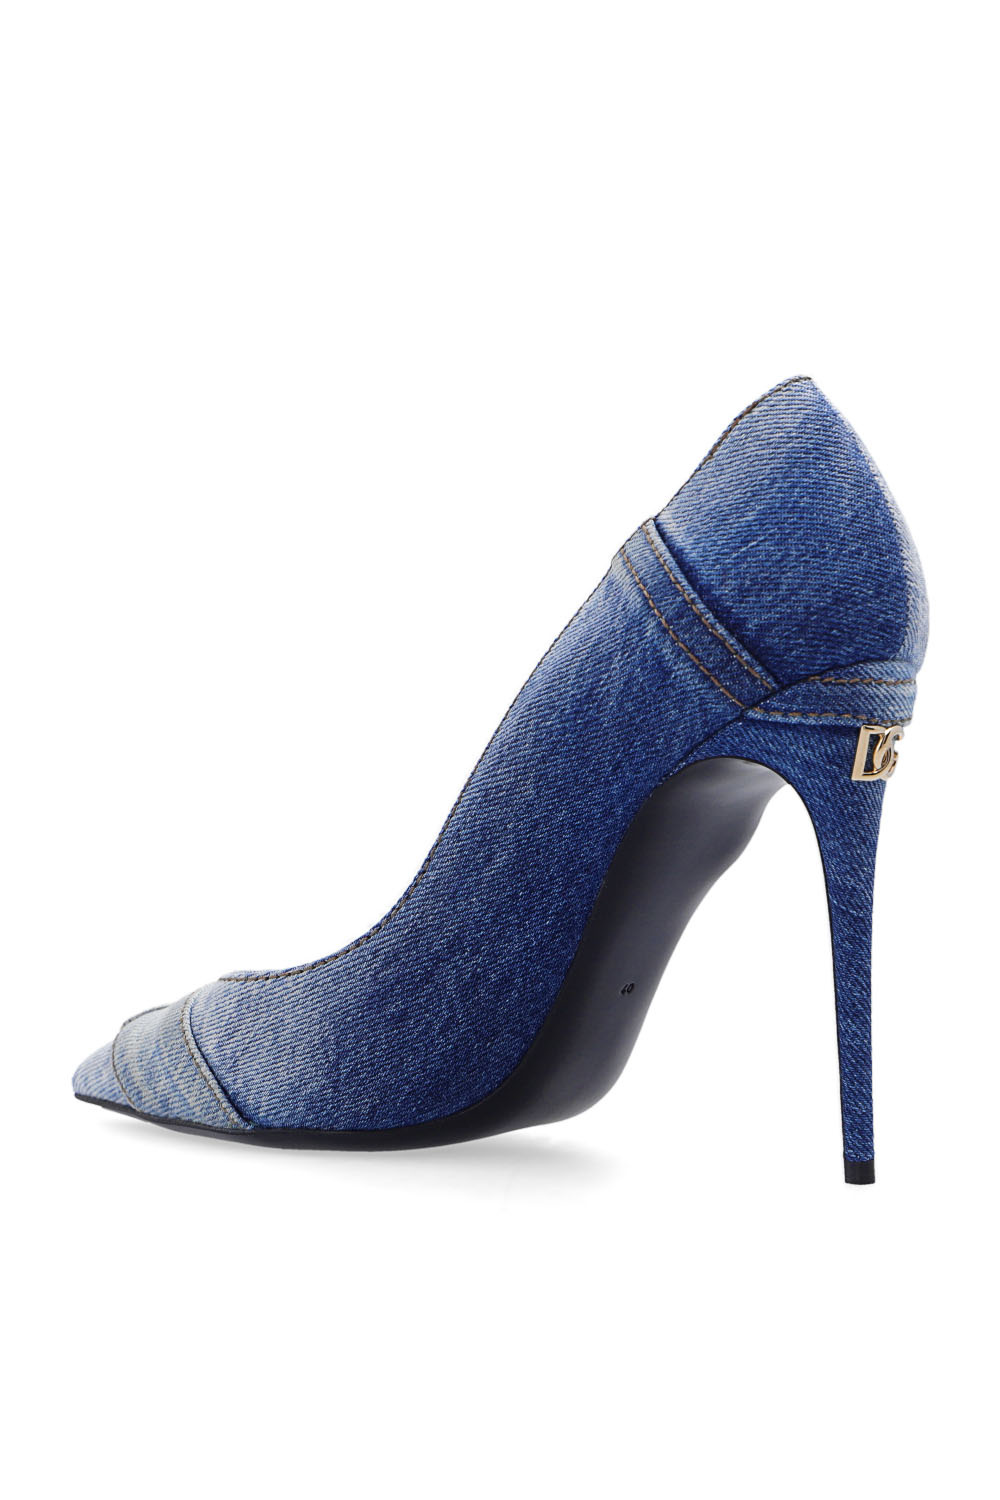 Dolce & Gabbana crystal-embellished platform sandals ‘Cardinale’ pumps